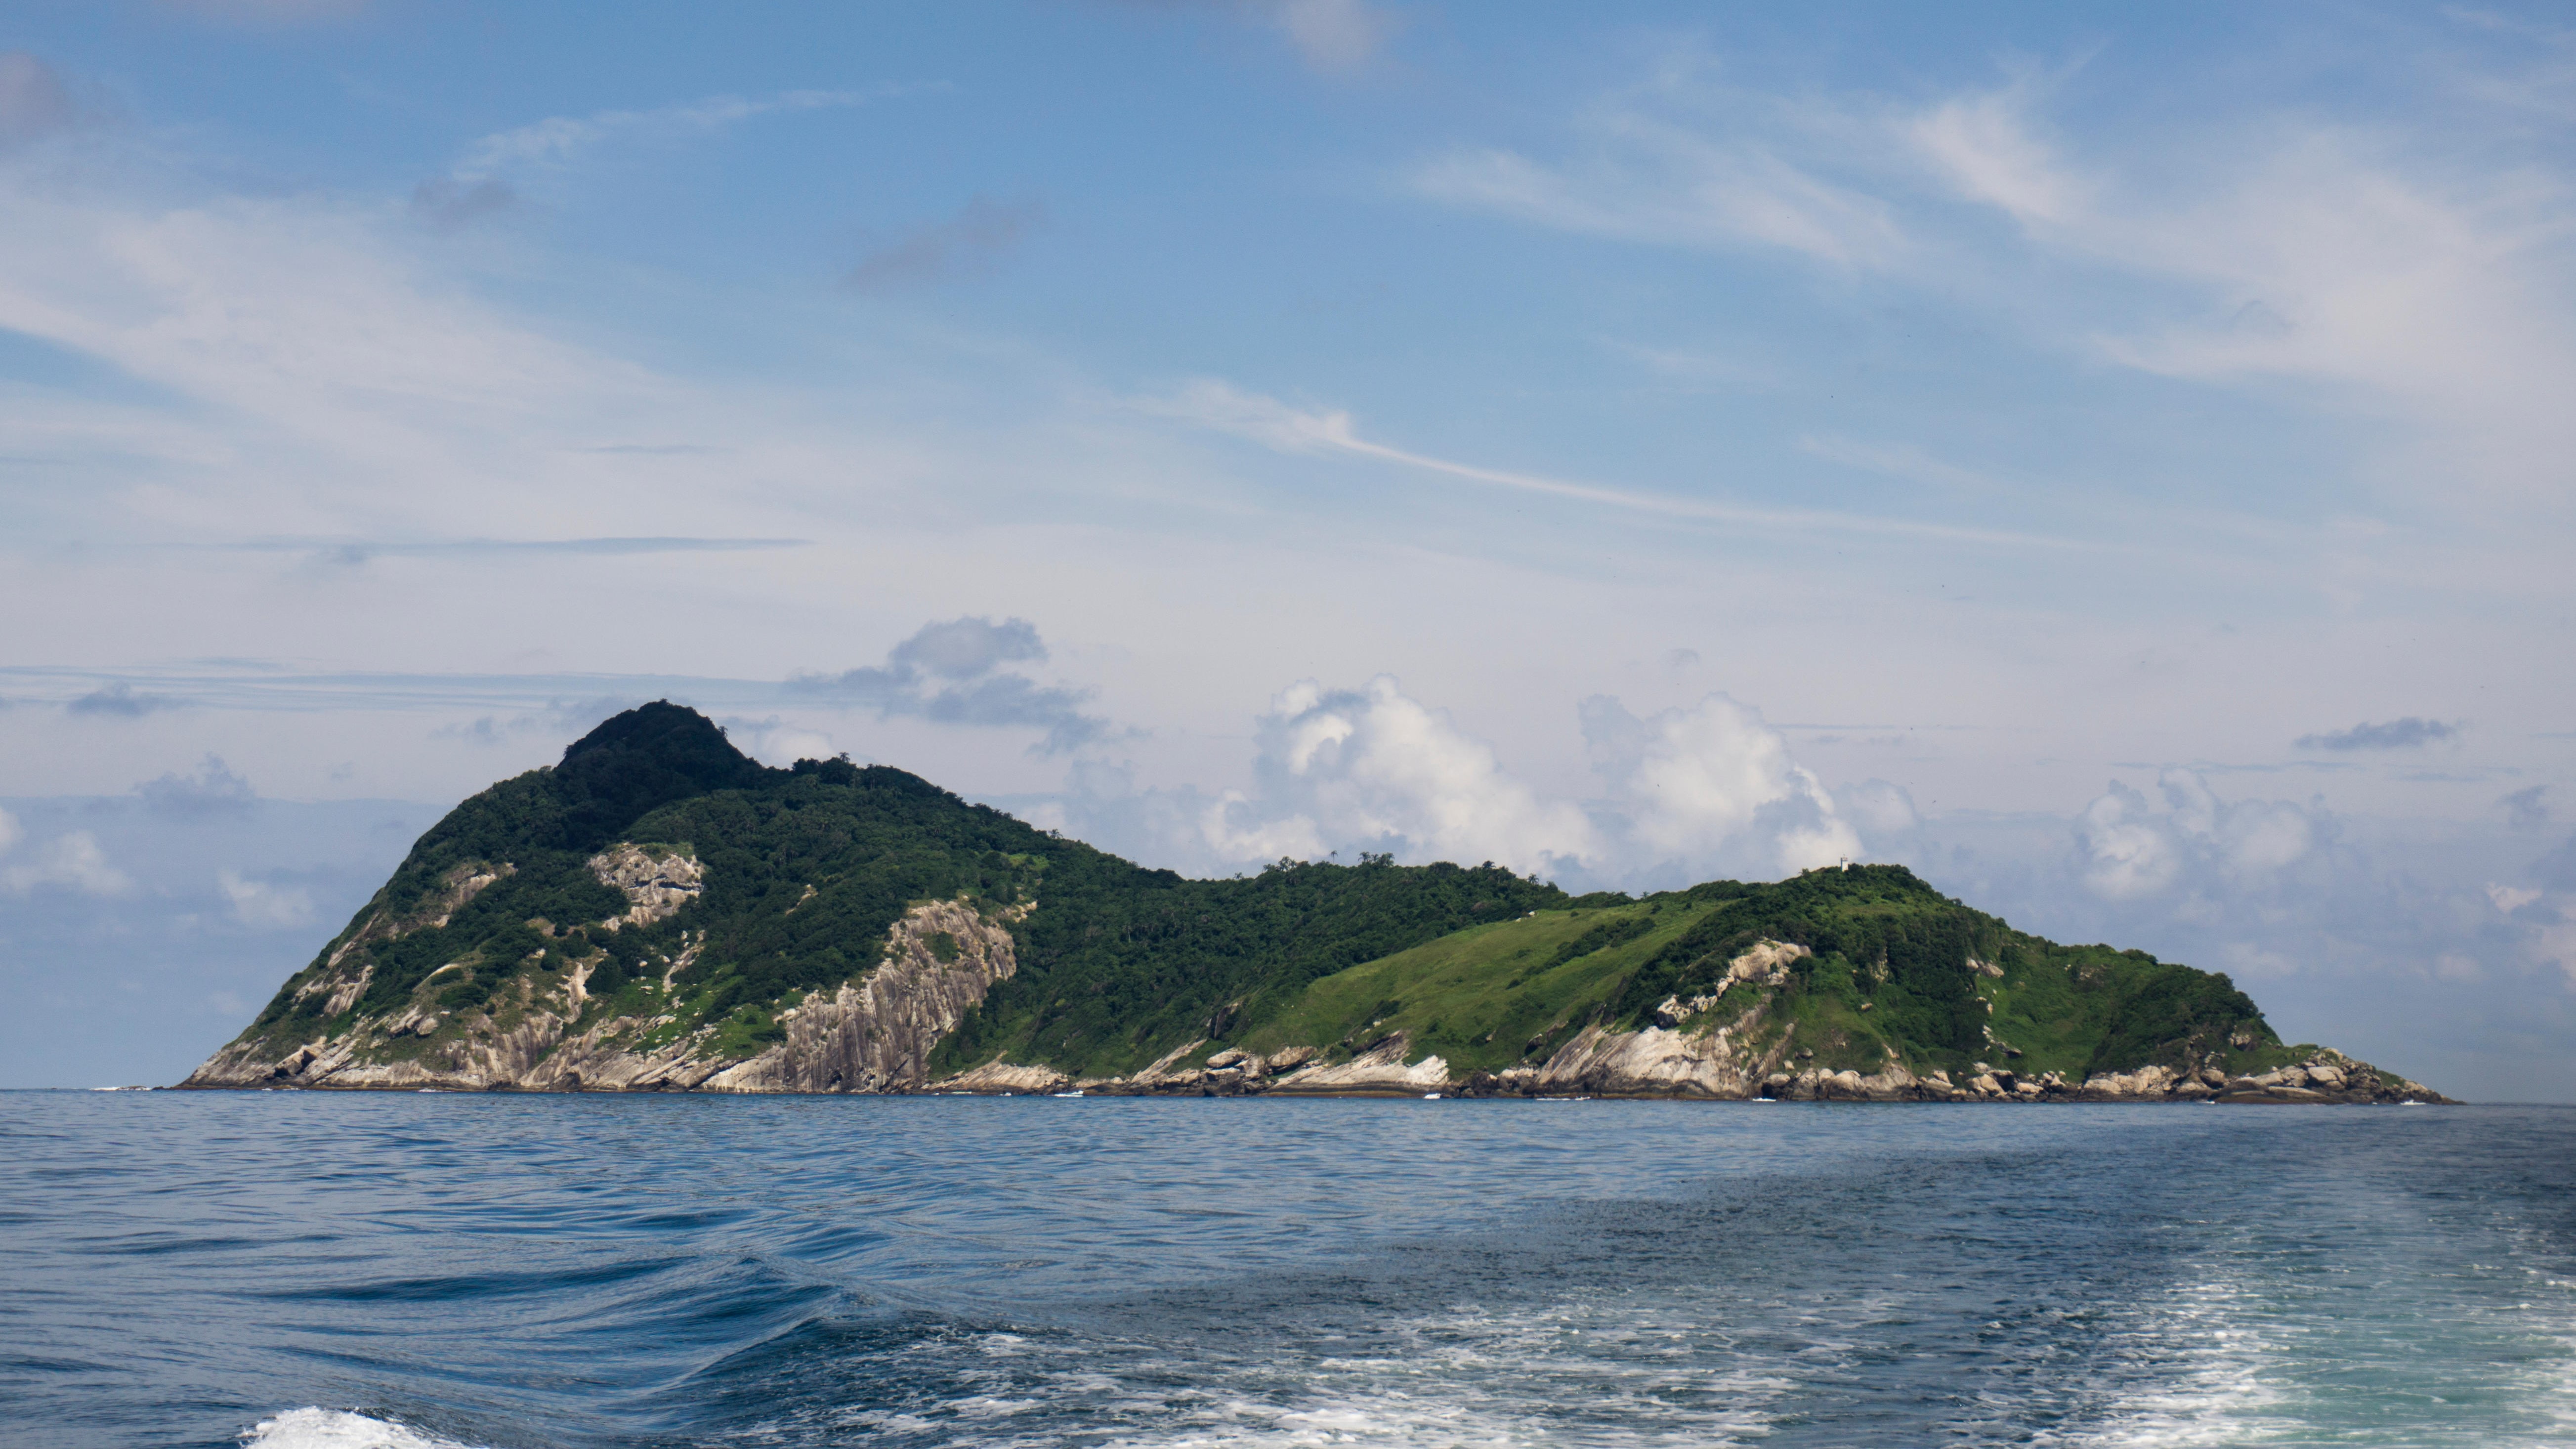 Снимка на Змийския остров, направена от лодка в Атлантическия океан.  Островът има променлив терен от гори, пасища и безплодни скали.